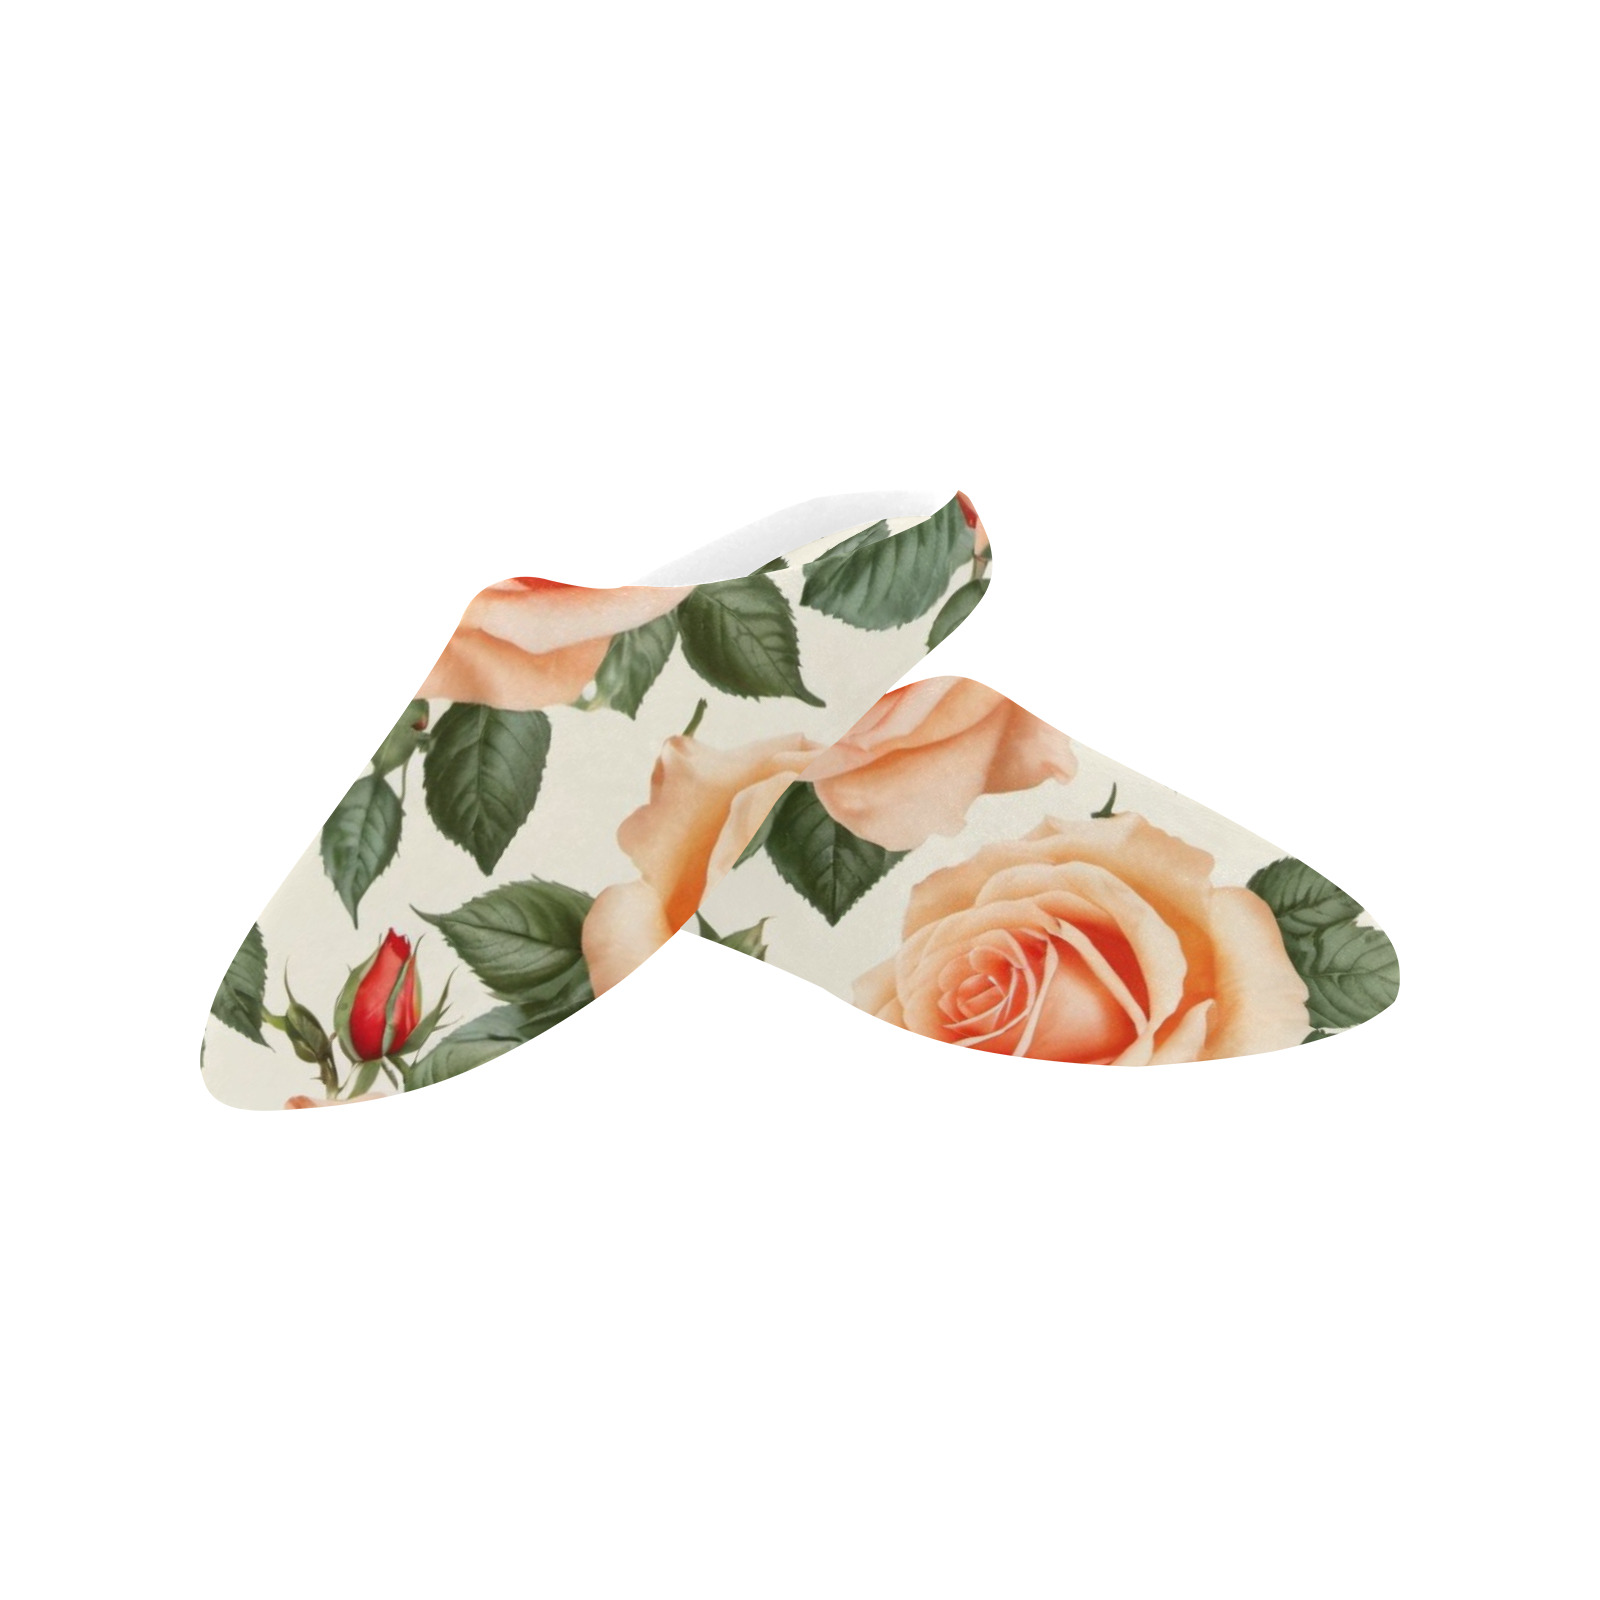 vintage rose pattern Women's Non-Slip Cotton Slippers (Model 0602)